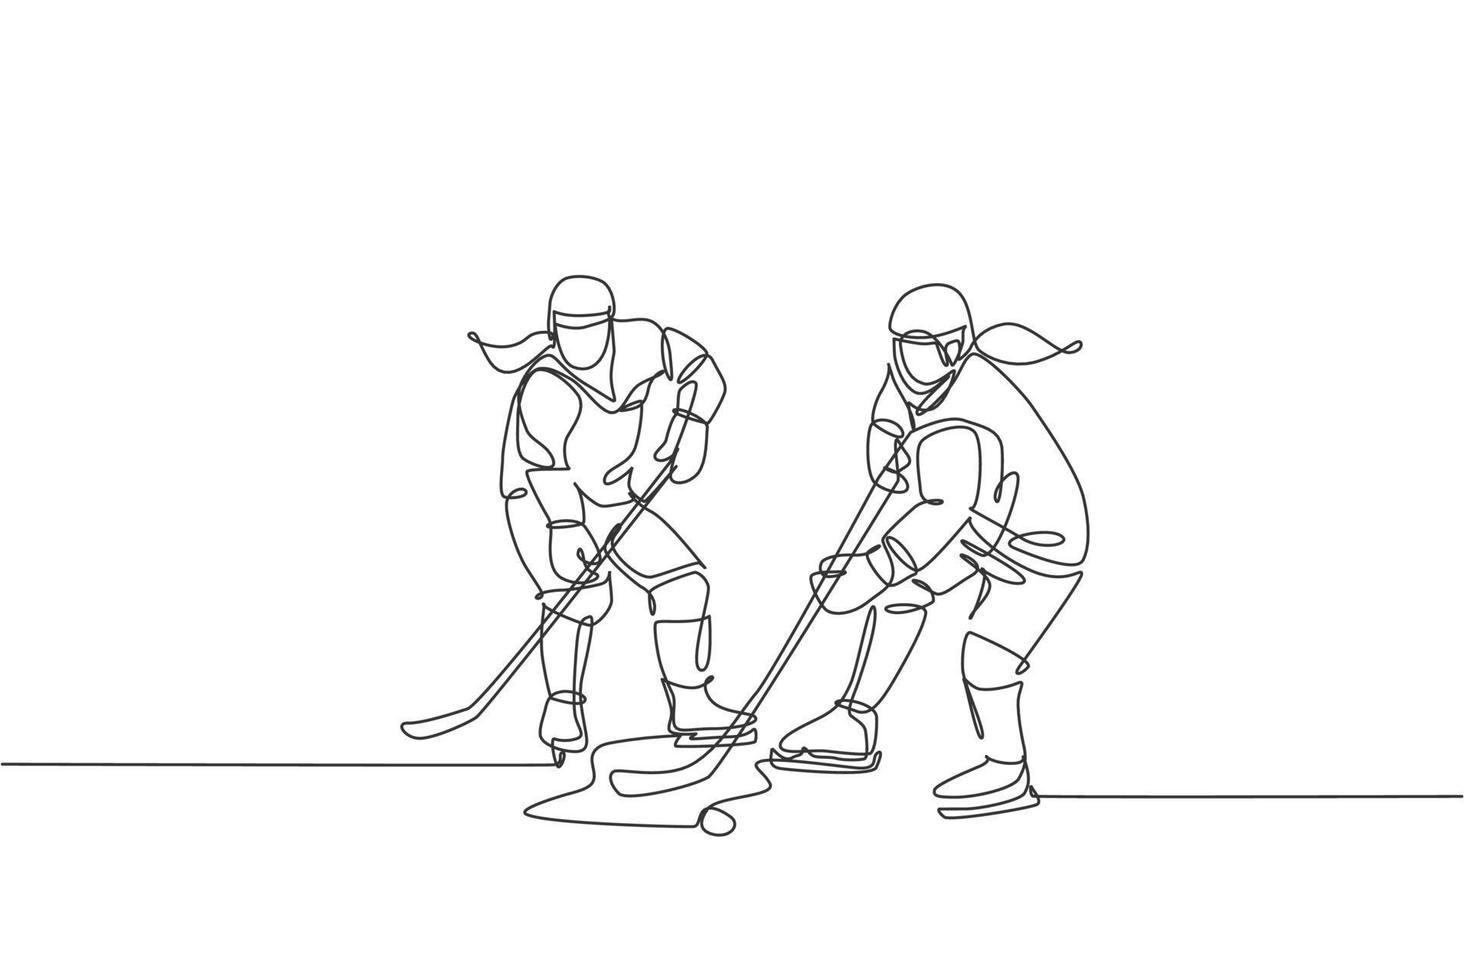 un seul dessin de deux jeunes joueurs de hockey sur glace en action pour gagner la rondelle lors d'un match de compétition sur l'illustration vectorielle du stade de la patinoire. concept de tournoi sportif. conception de dessin en ligne continue vecteur